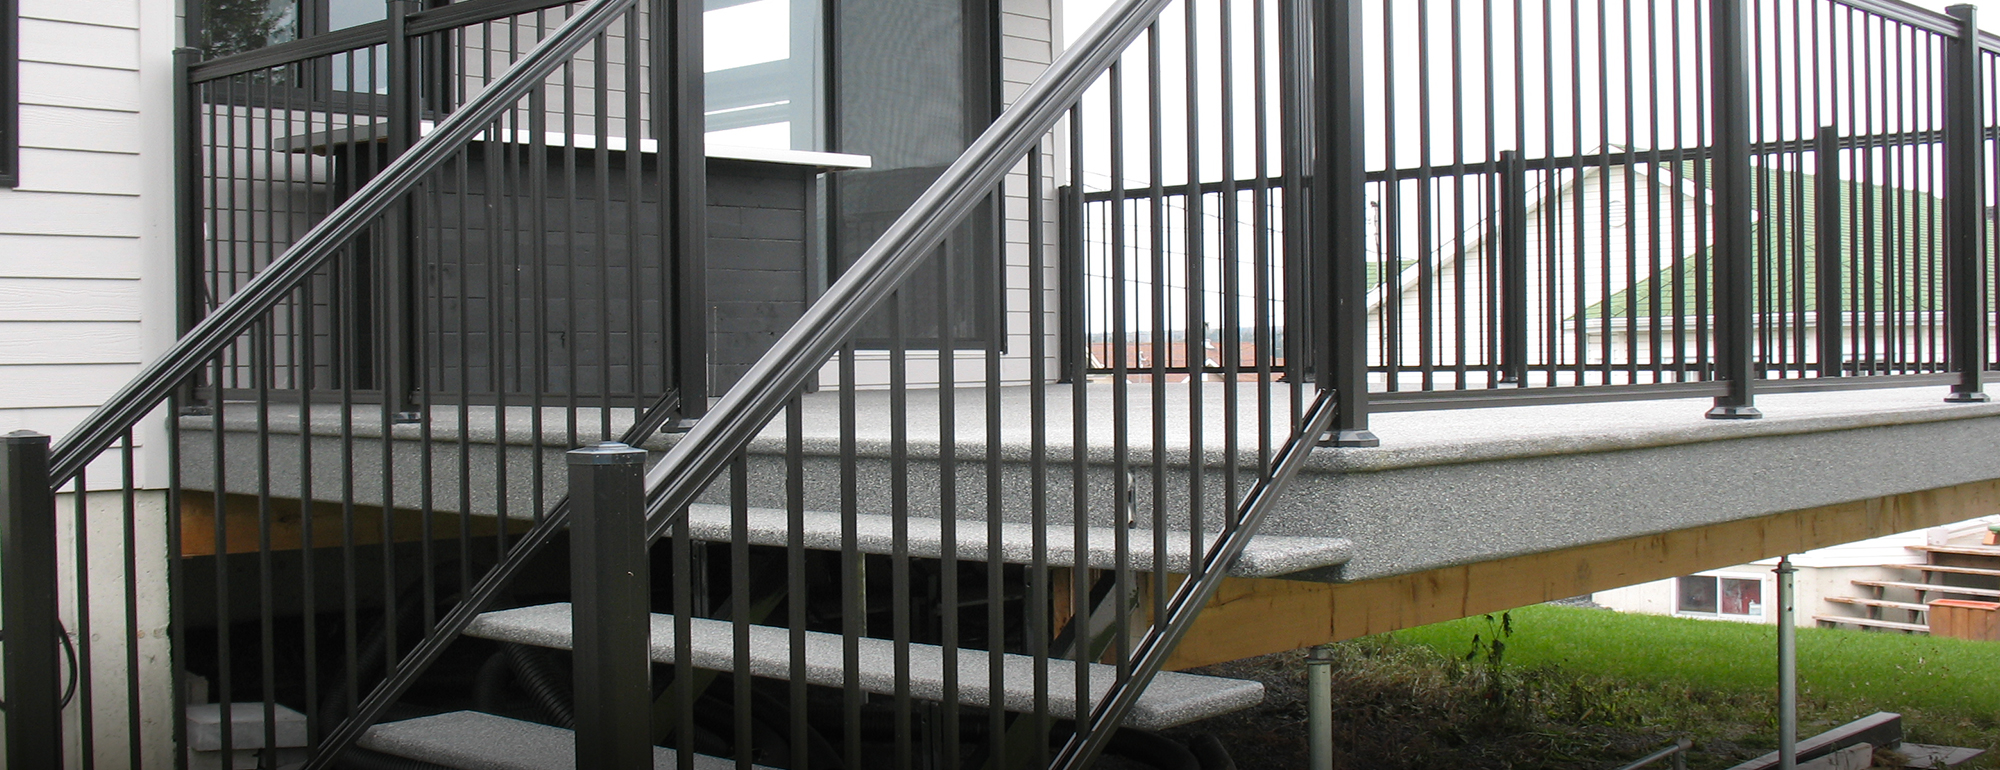 Service de terrasse, patio, marche, piscine, boite, balcon en fibre de verre avec rampe en aluminium réalisé à Repentigny / Fibre de verre Lanaudière